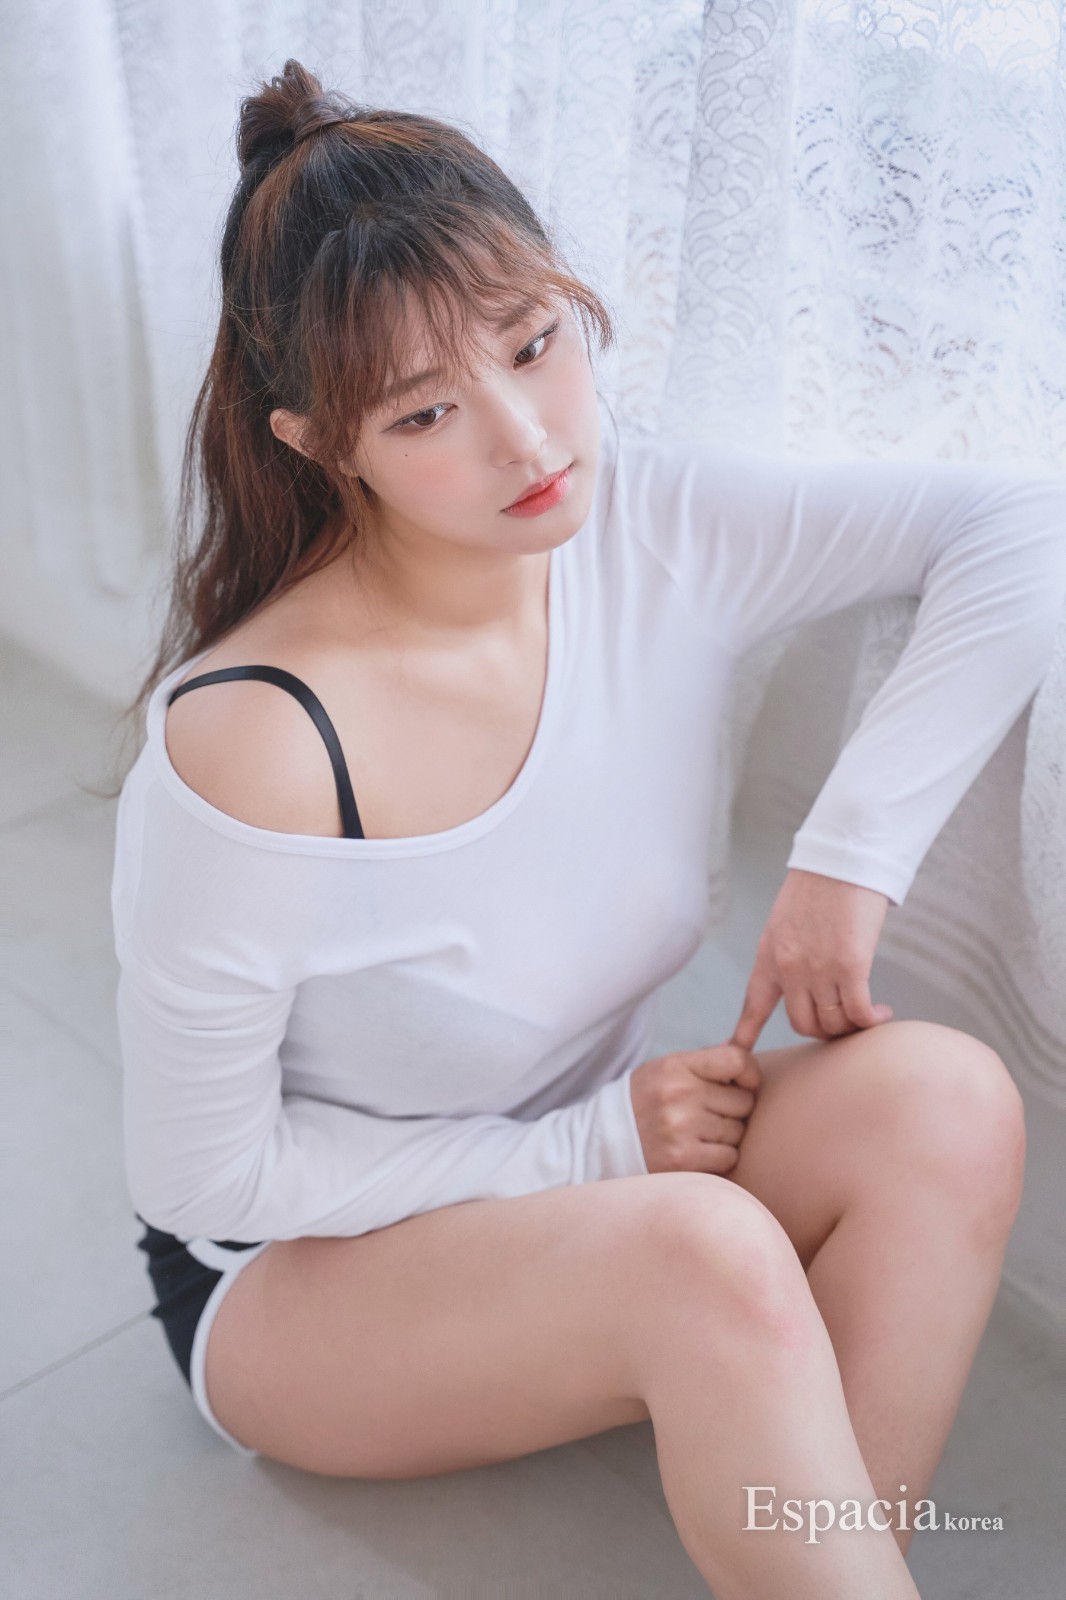 韩国模特美少女召甘平福利图赏 无可挑剔的身材  第1张